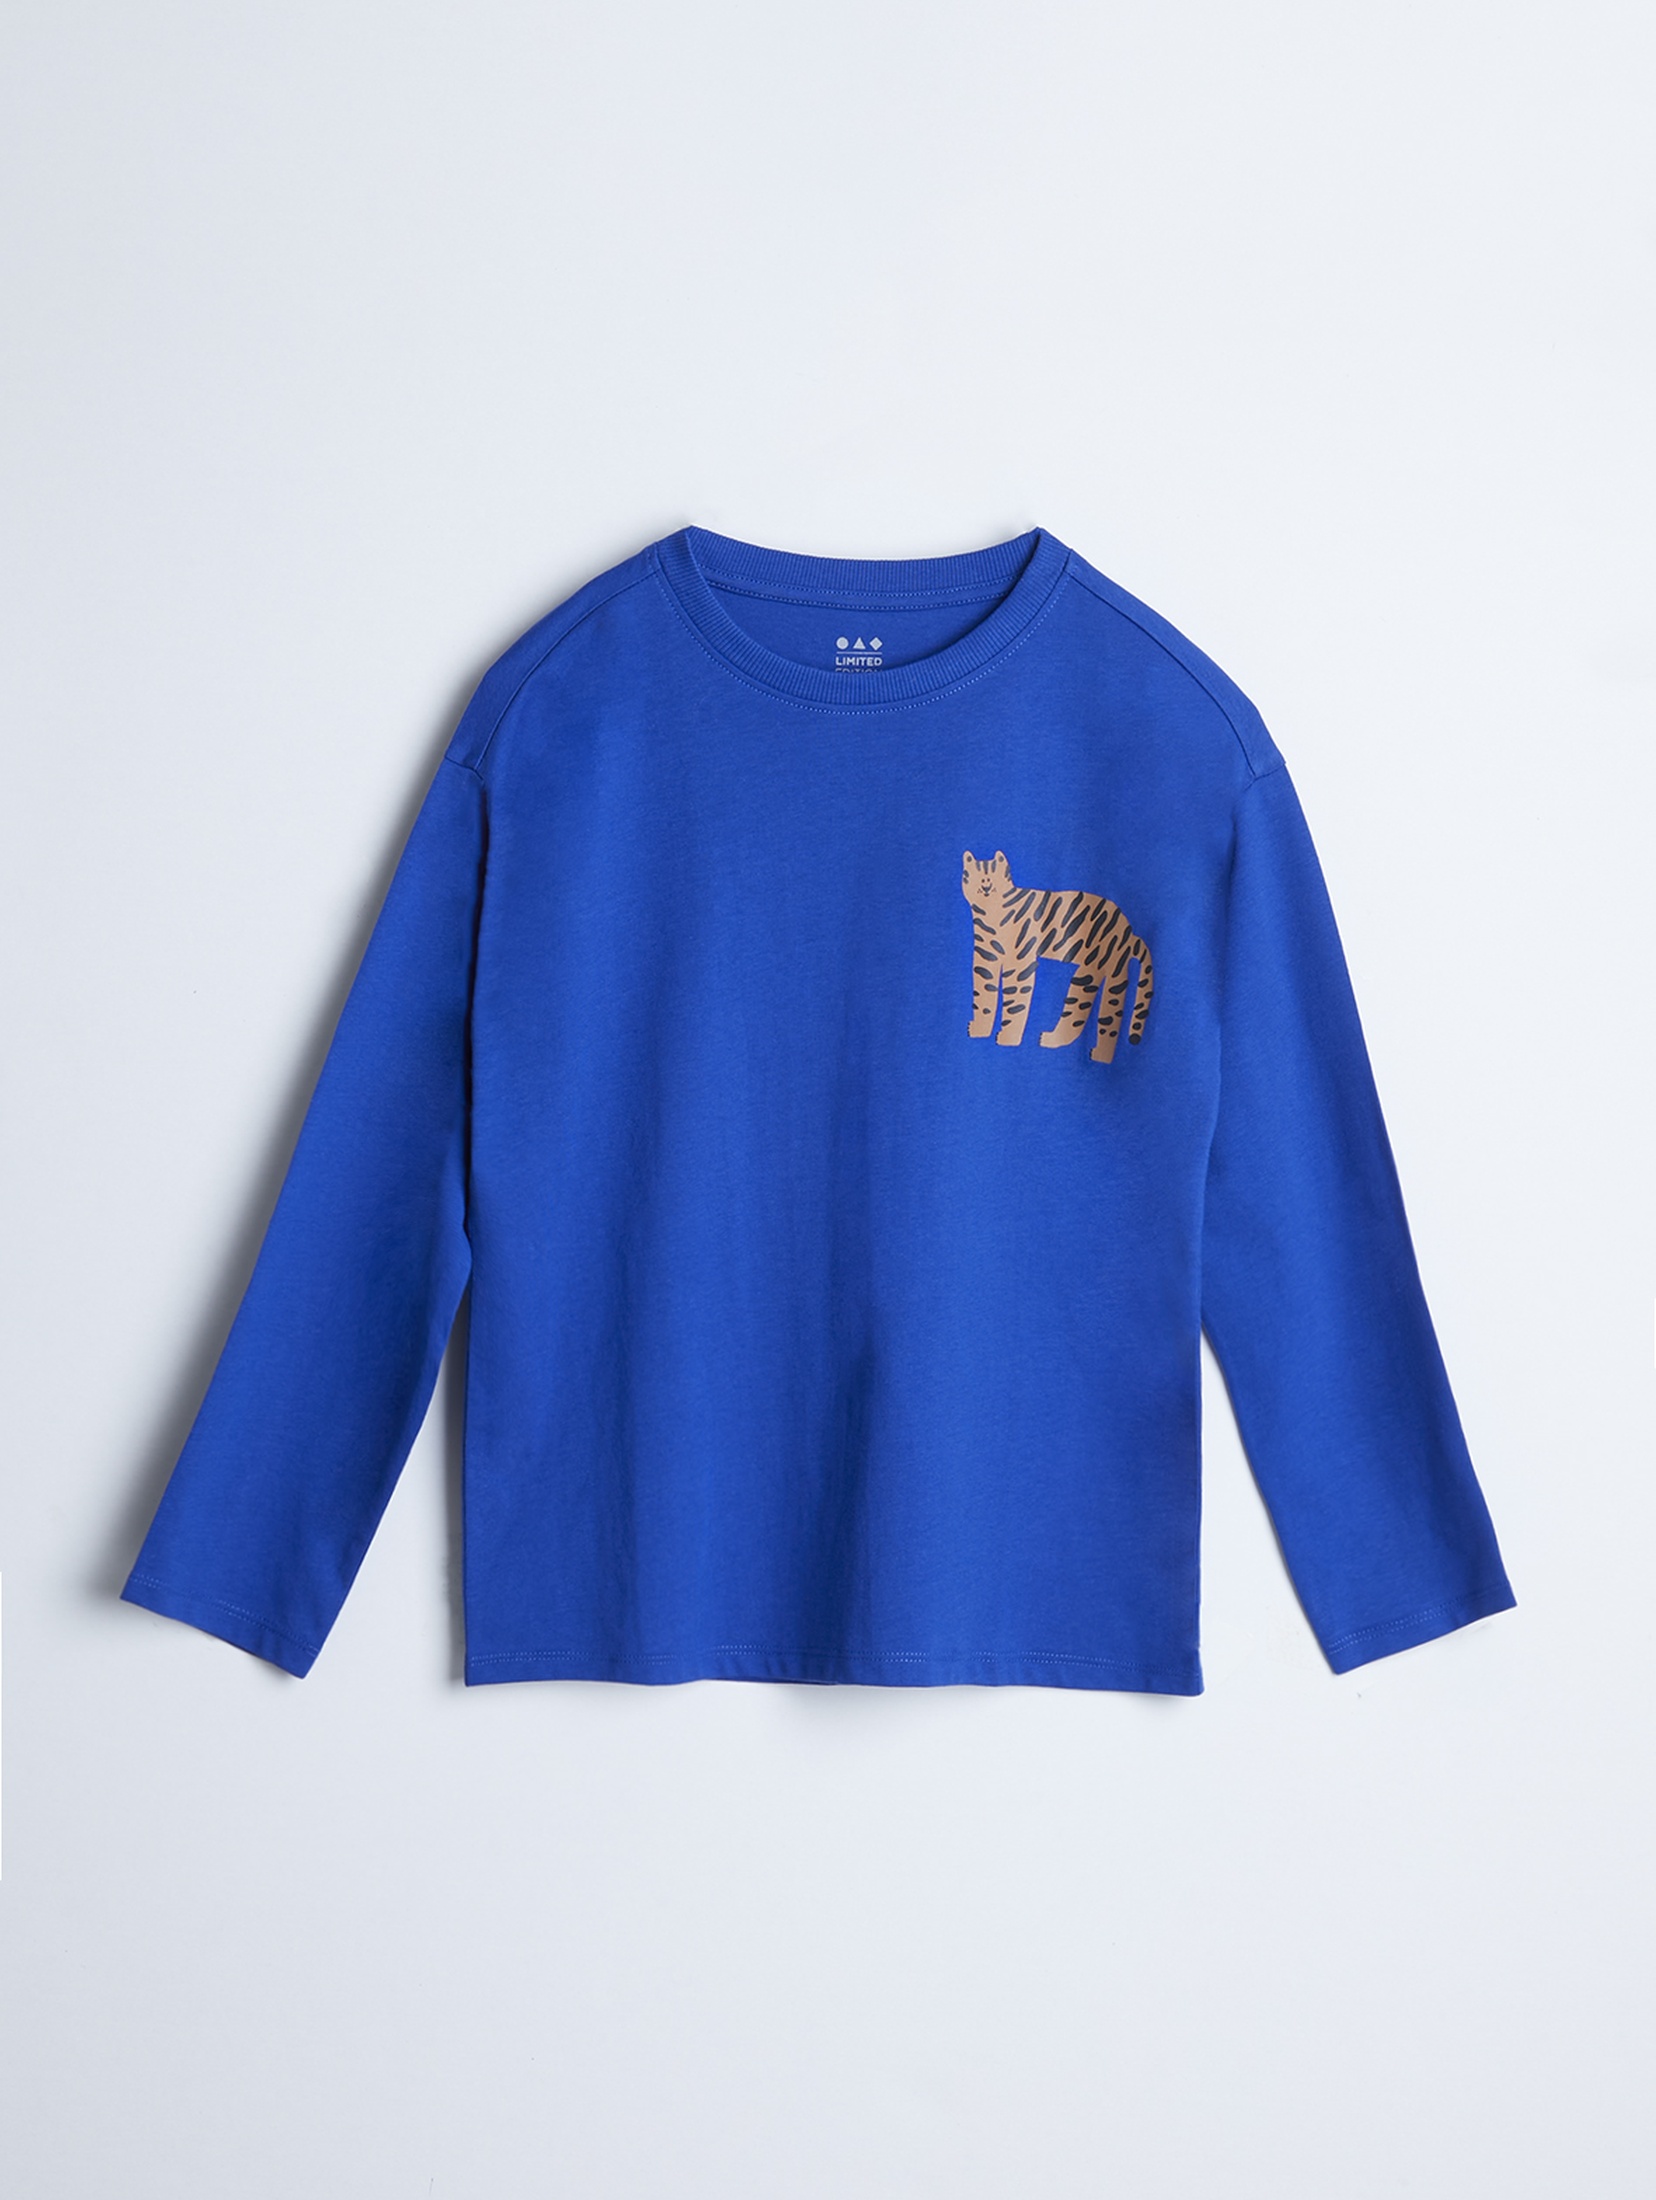 Dzianinowe bluzki dla dzieci w zwierzęce wzory - unisex - Limited Edition